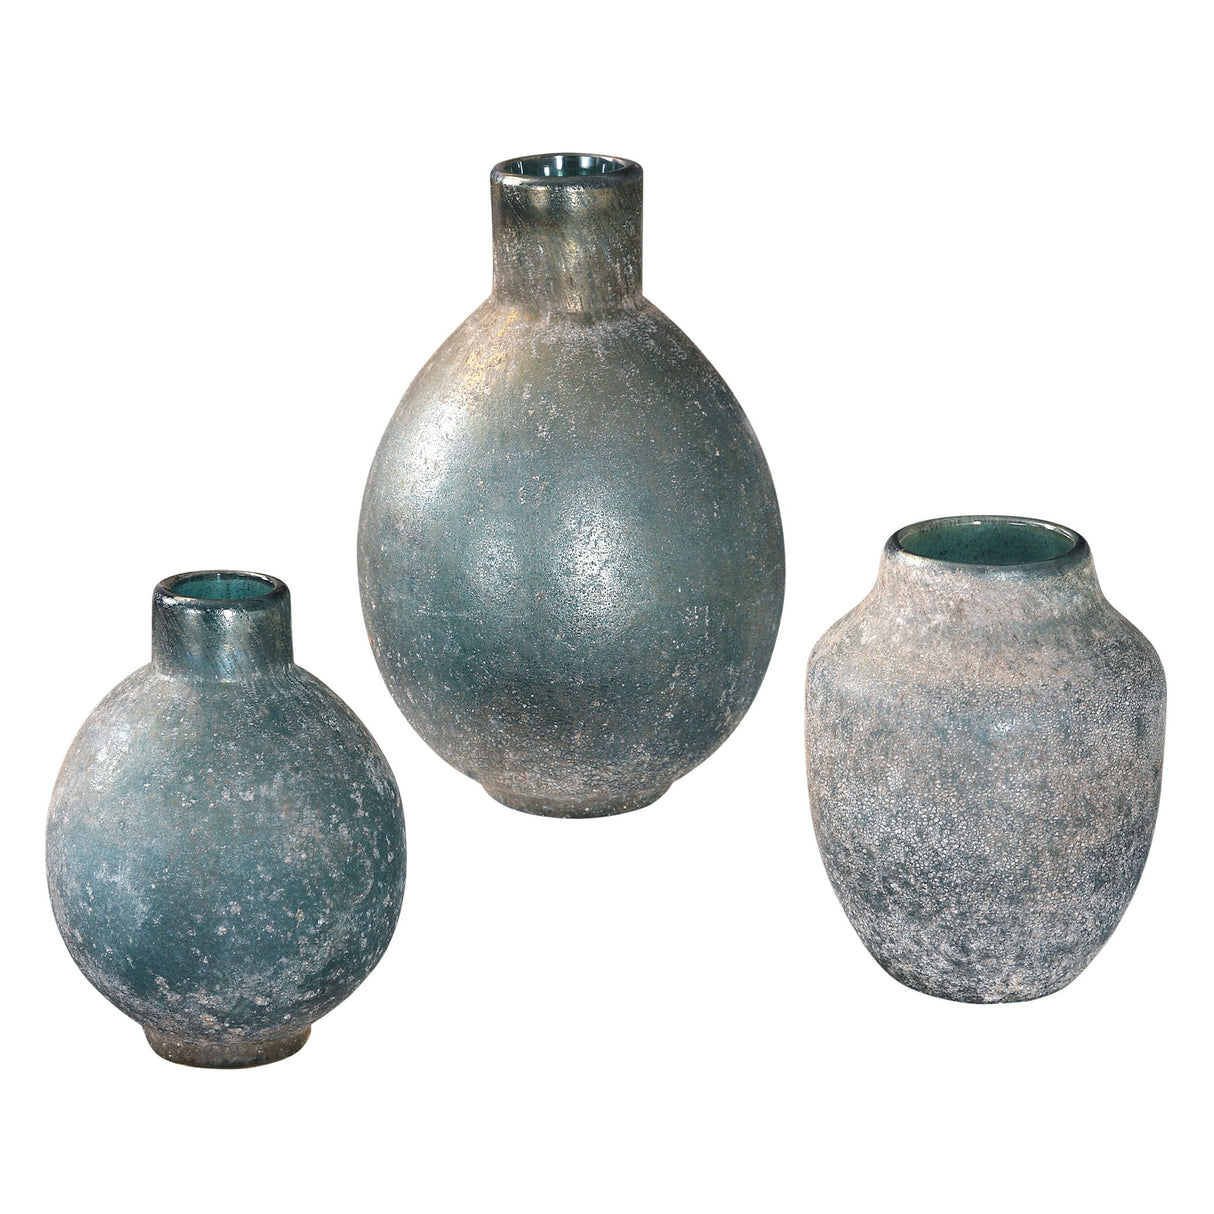 Mercede - Weathered Vases, Set Of 3 - Blue-green